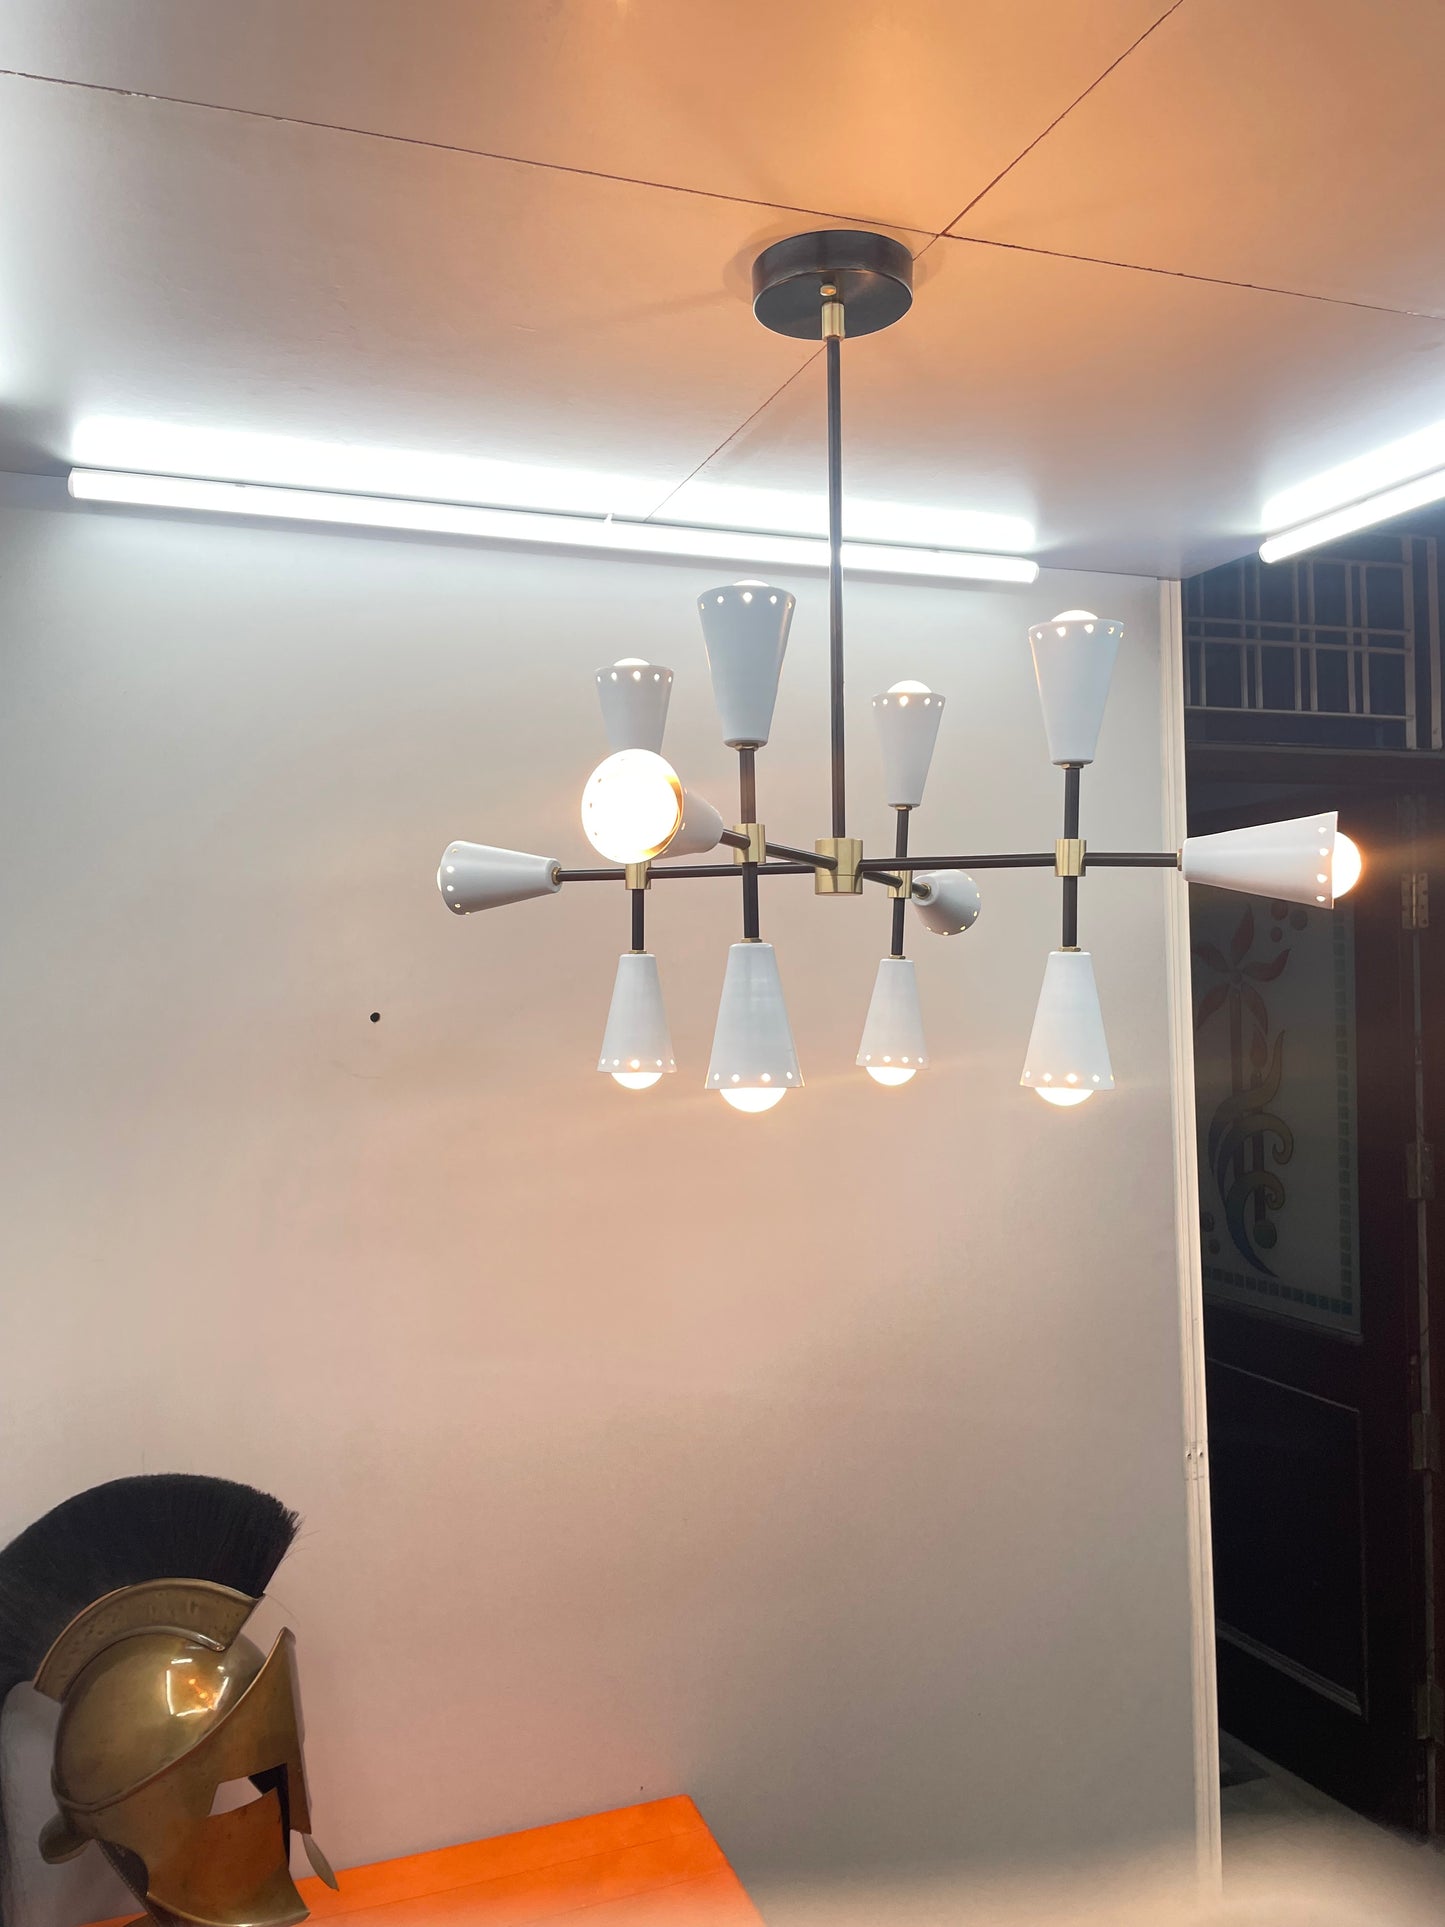 Gorgeous Mid Century White Sputnik Ceiling Light Lamp Dining room 12 Light - Global Lights Hub